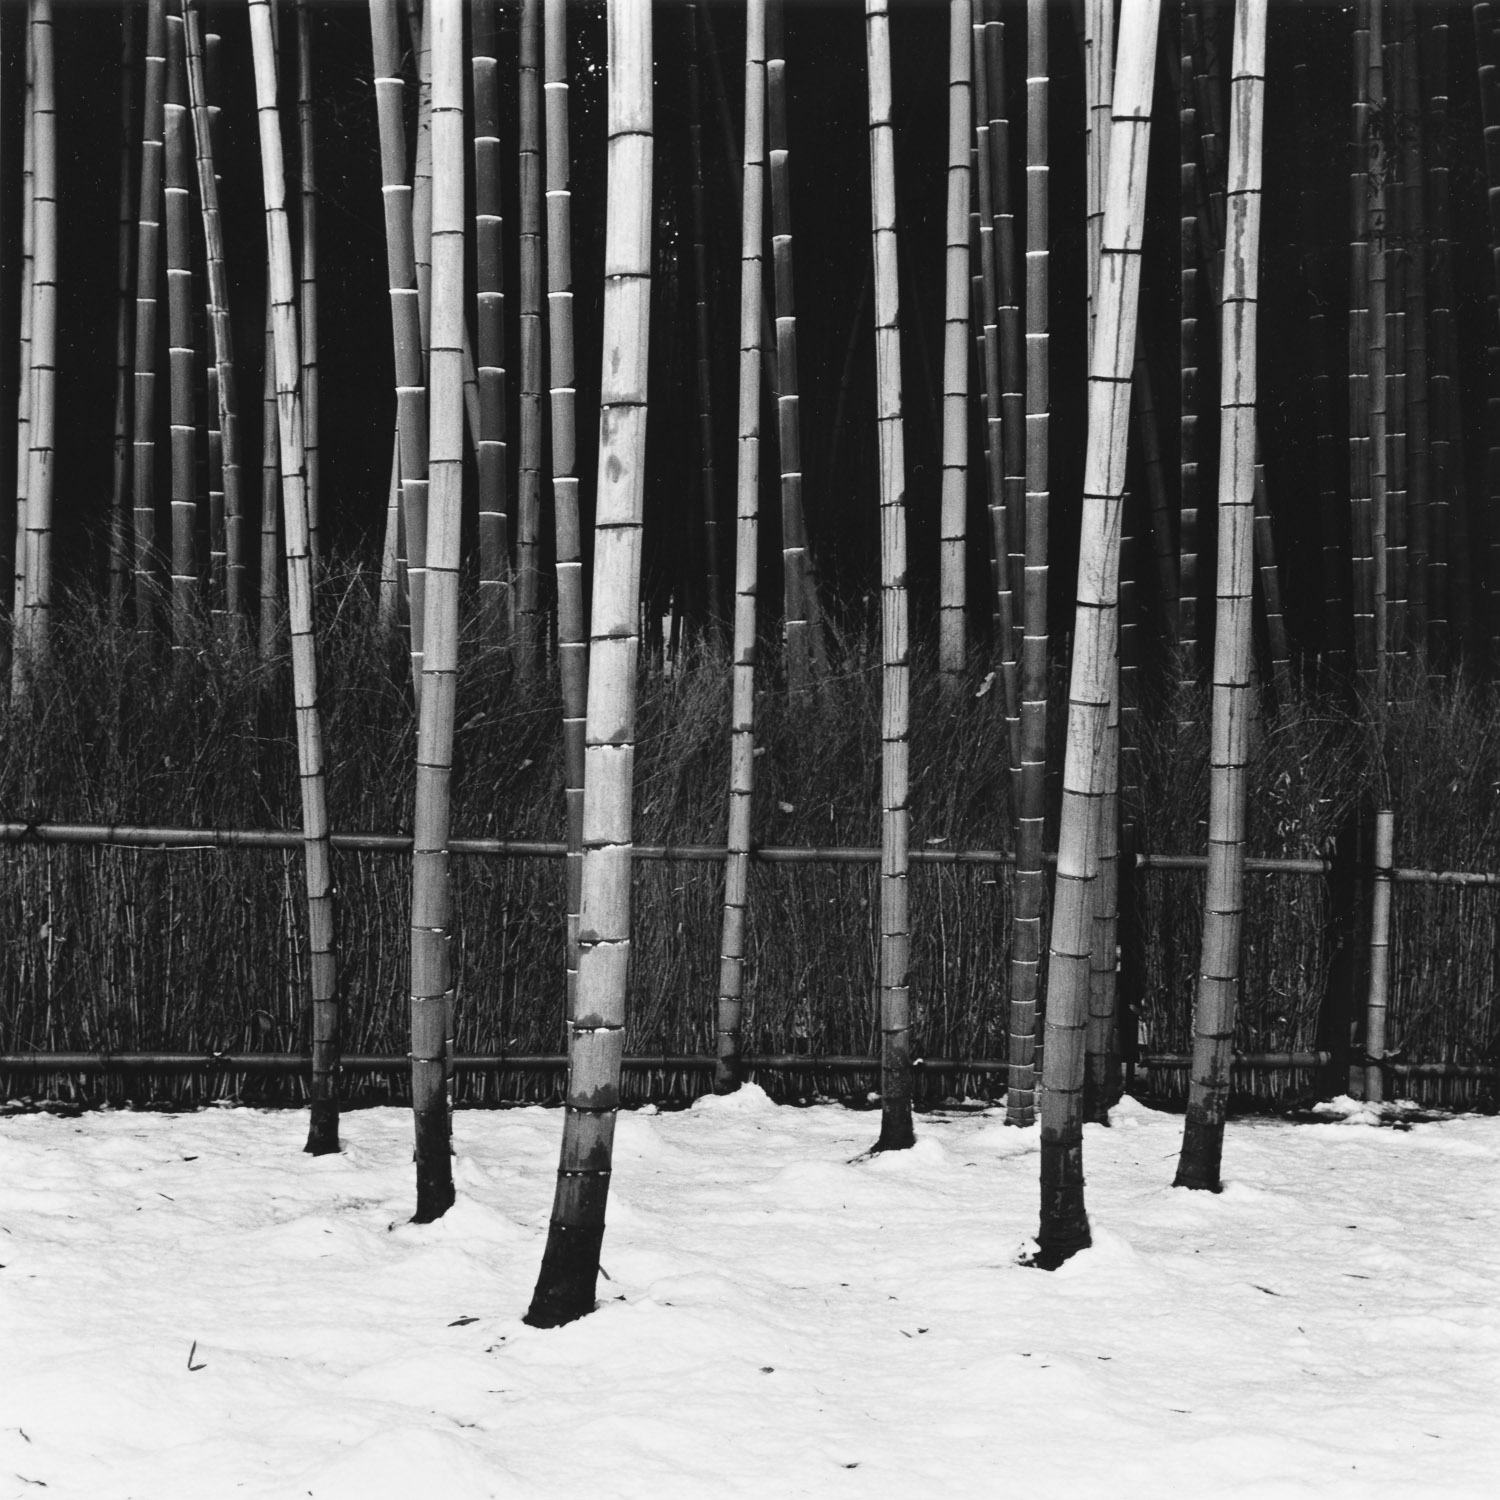 Bamboo and Snow, Tenryu-ji